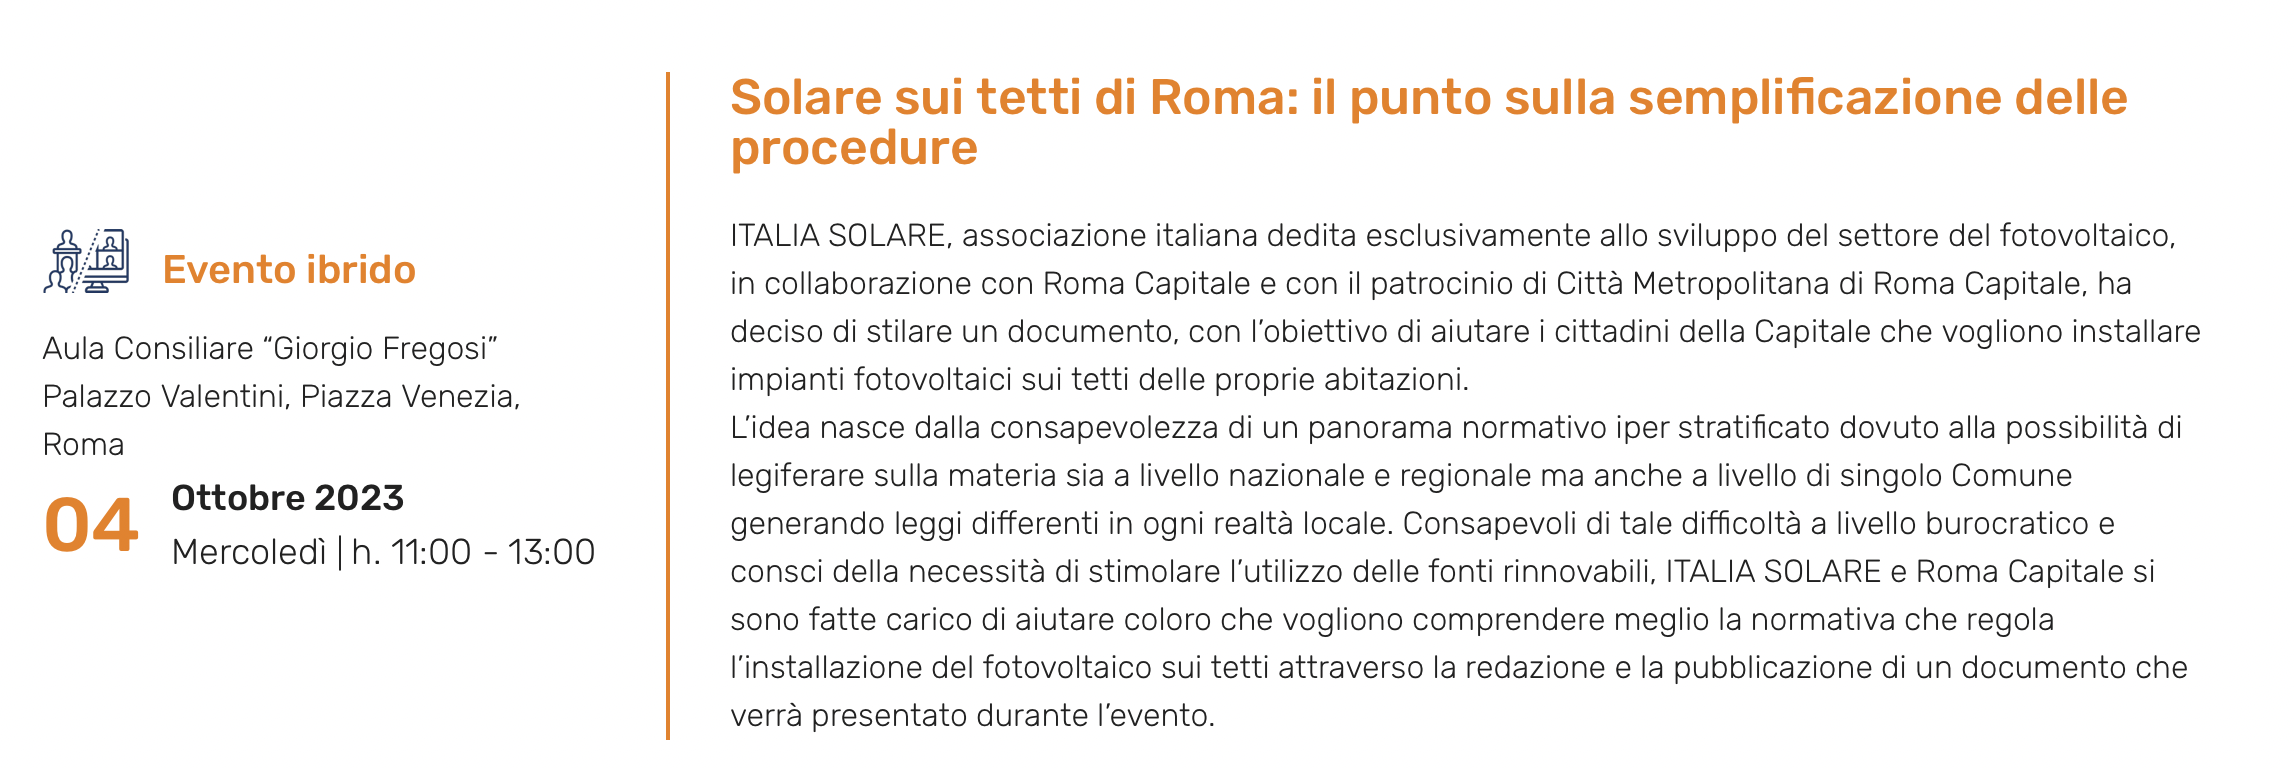 Solare sui tetti di Roma: il punto sulla semplificazione delle procedure